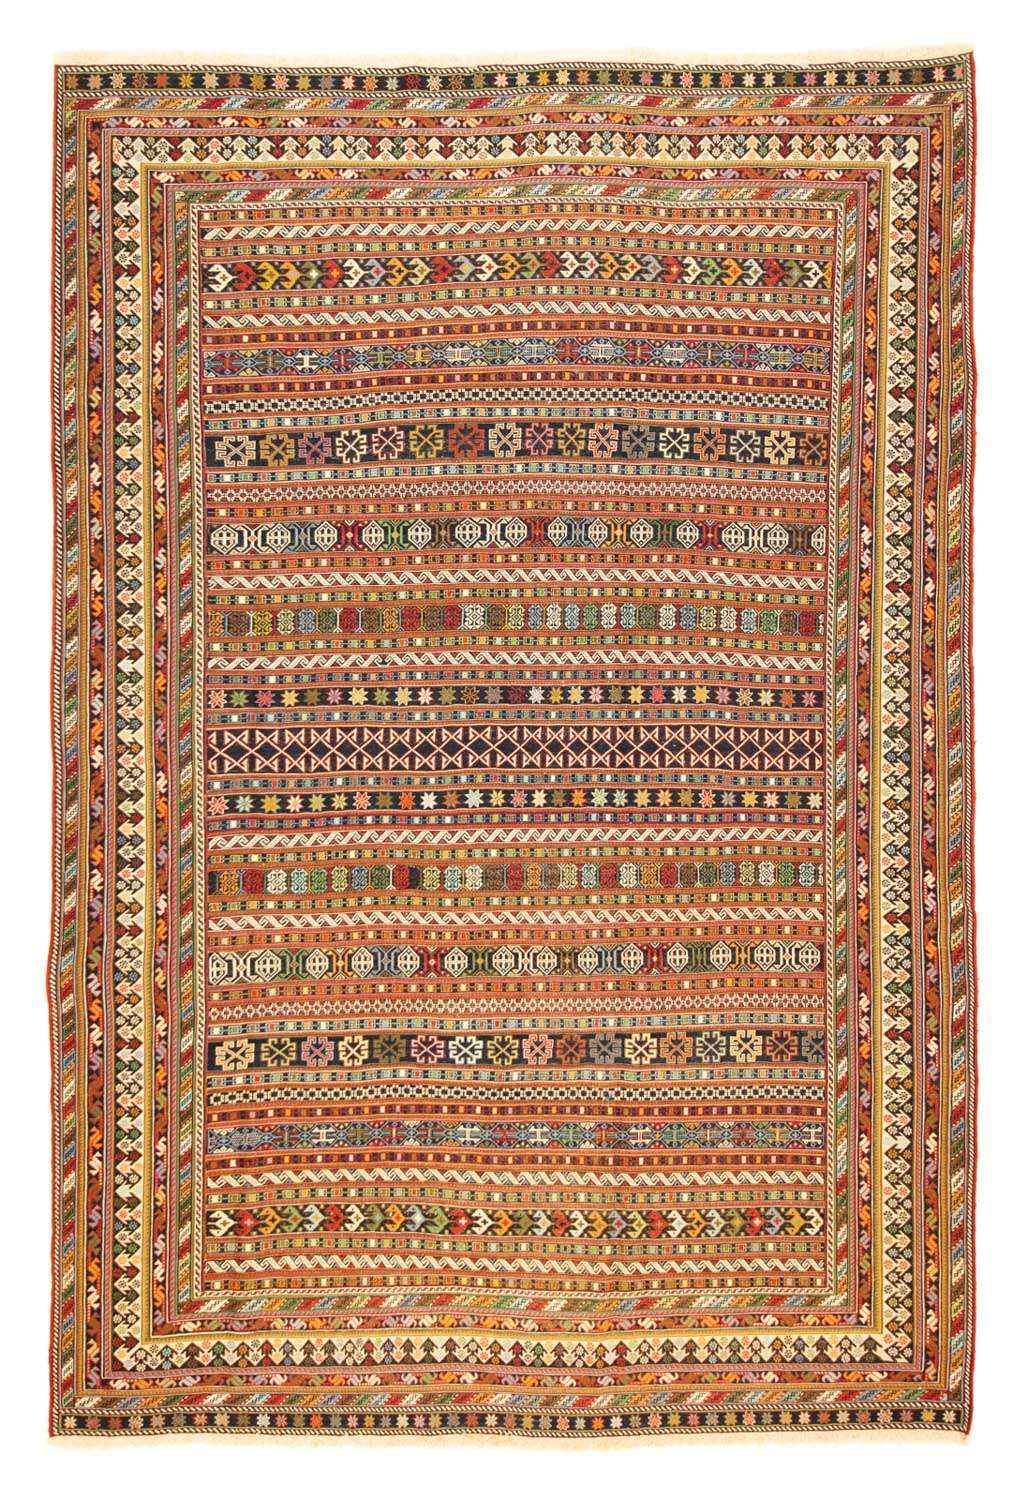 Tapete Persa - Nomadic - 287 x 194 cm - multicolorido